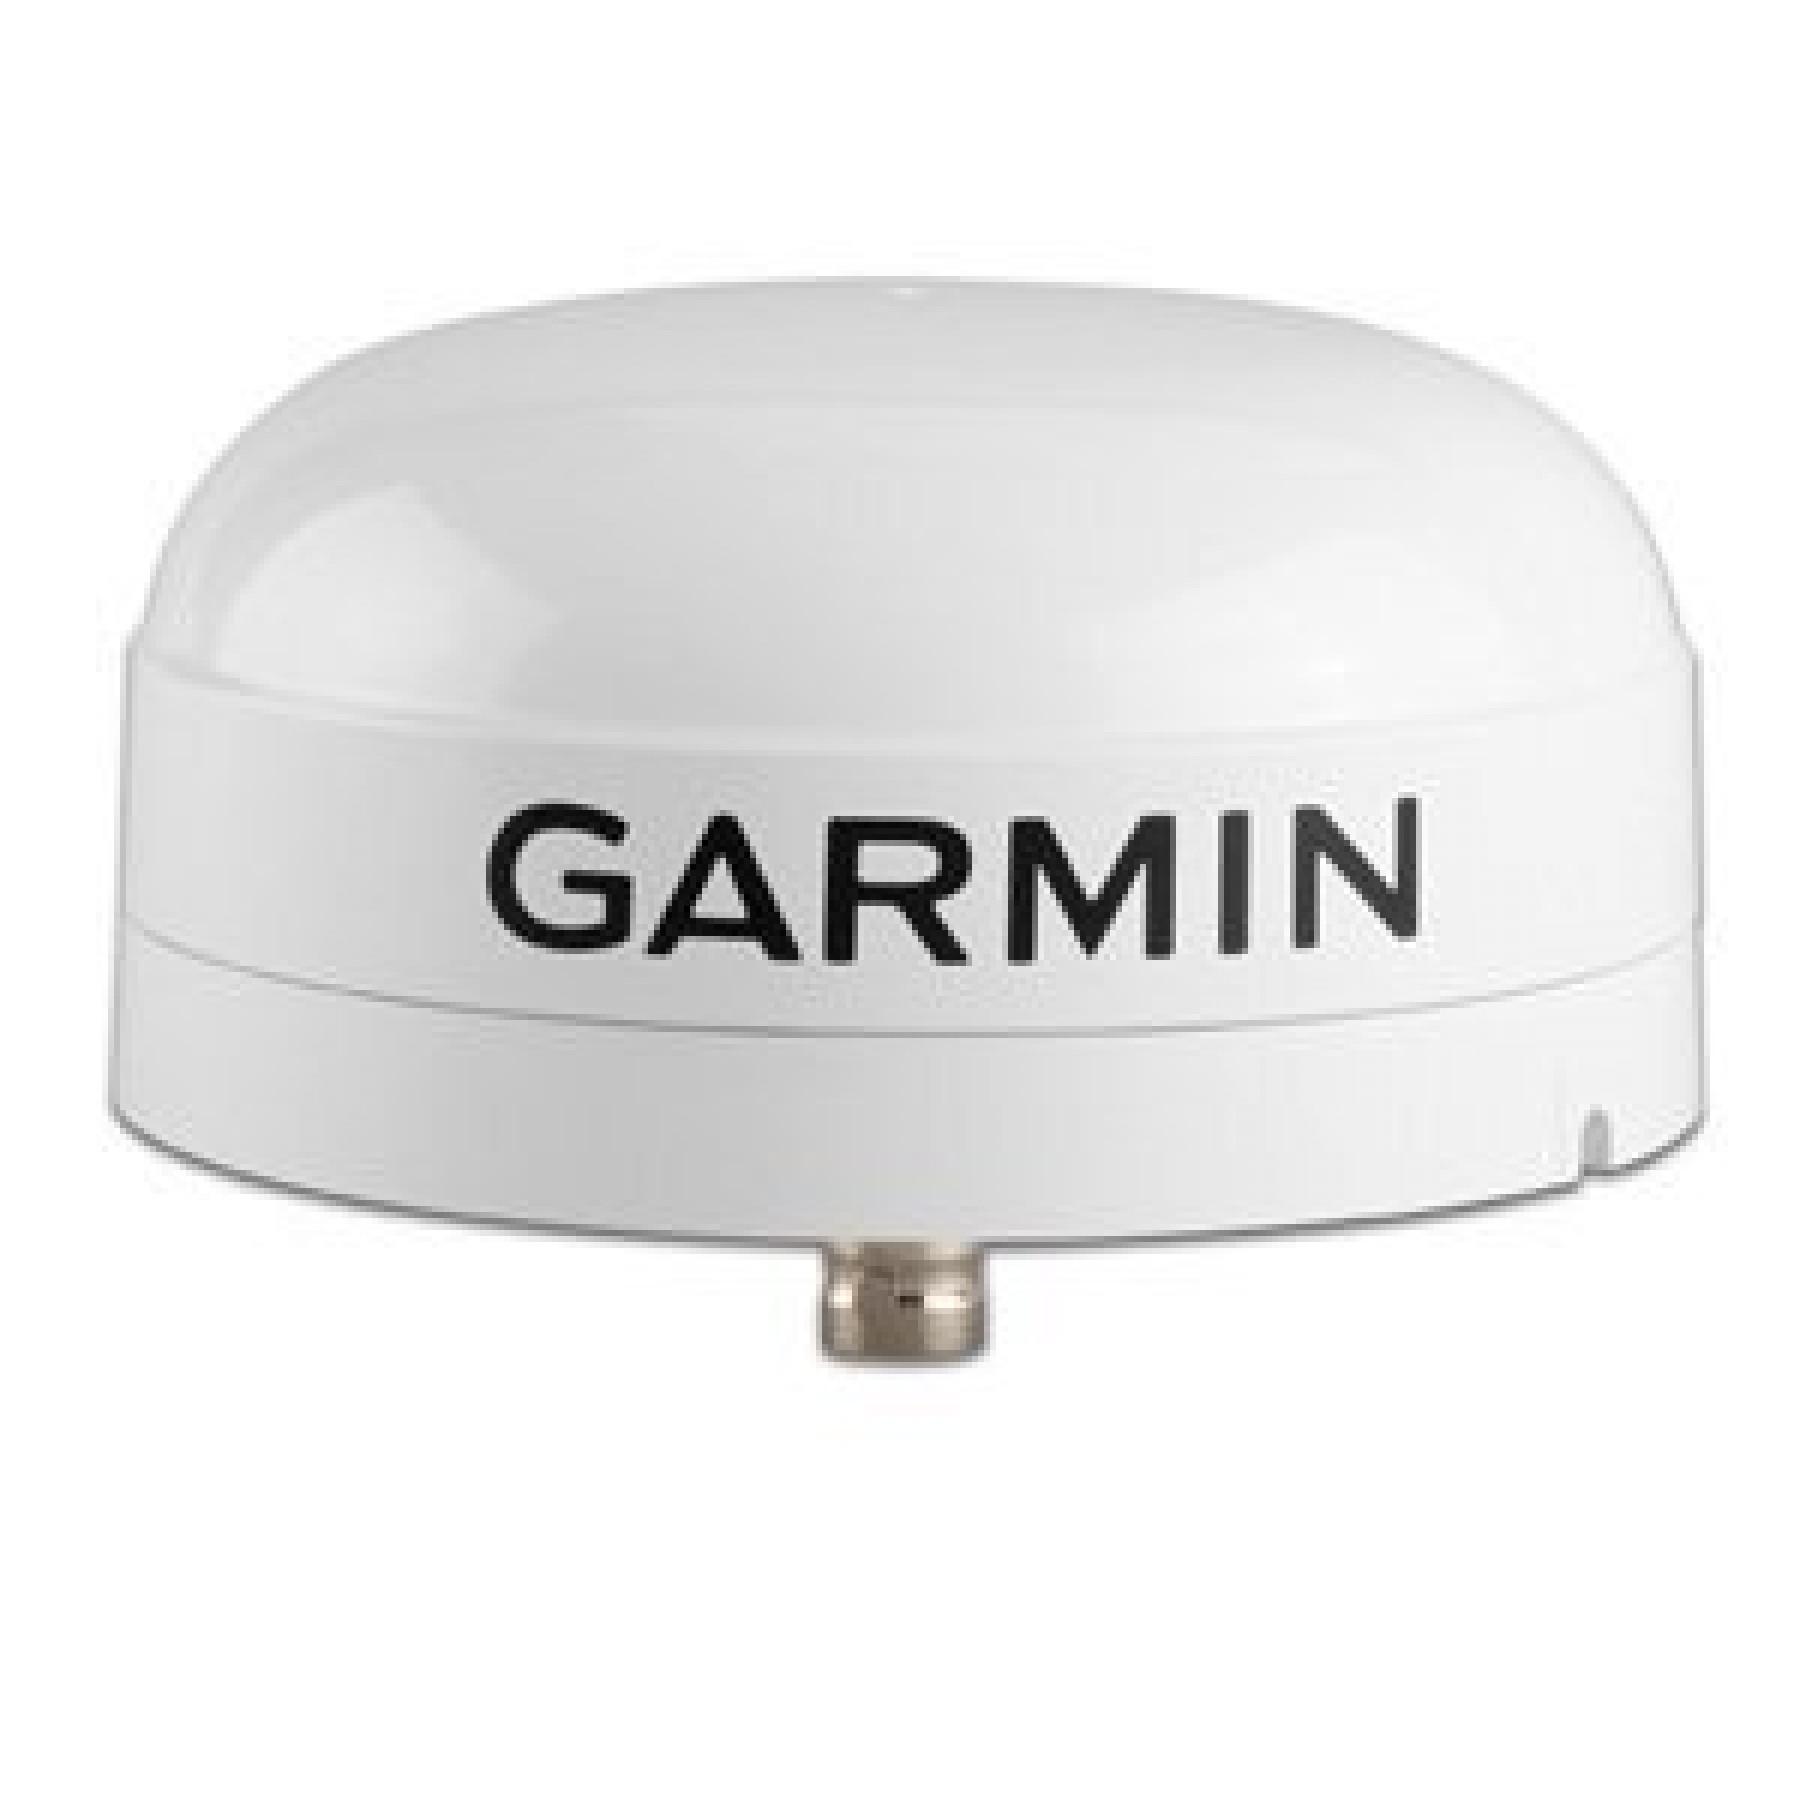 Antenn Garmin gps ga 38 gps/antenne glonass